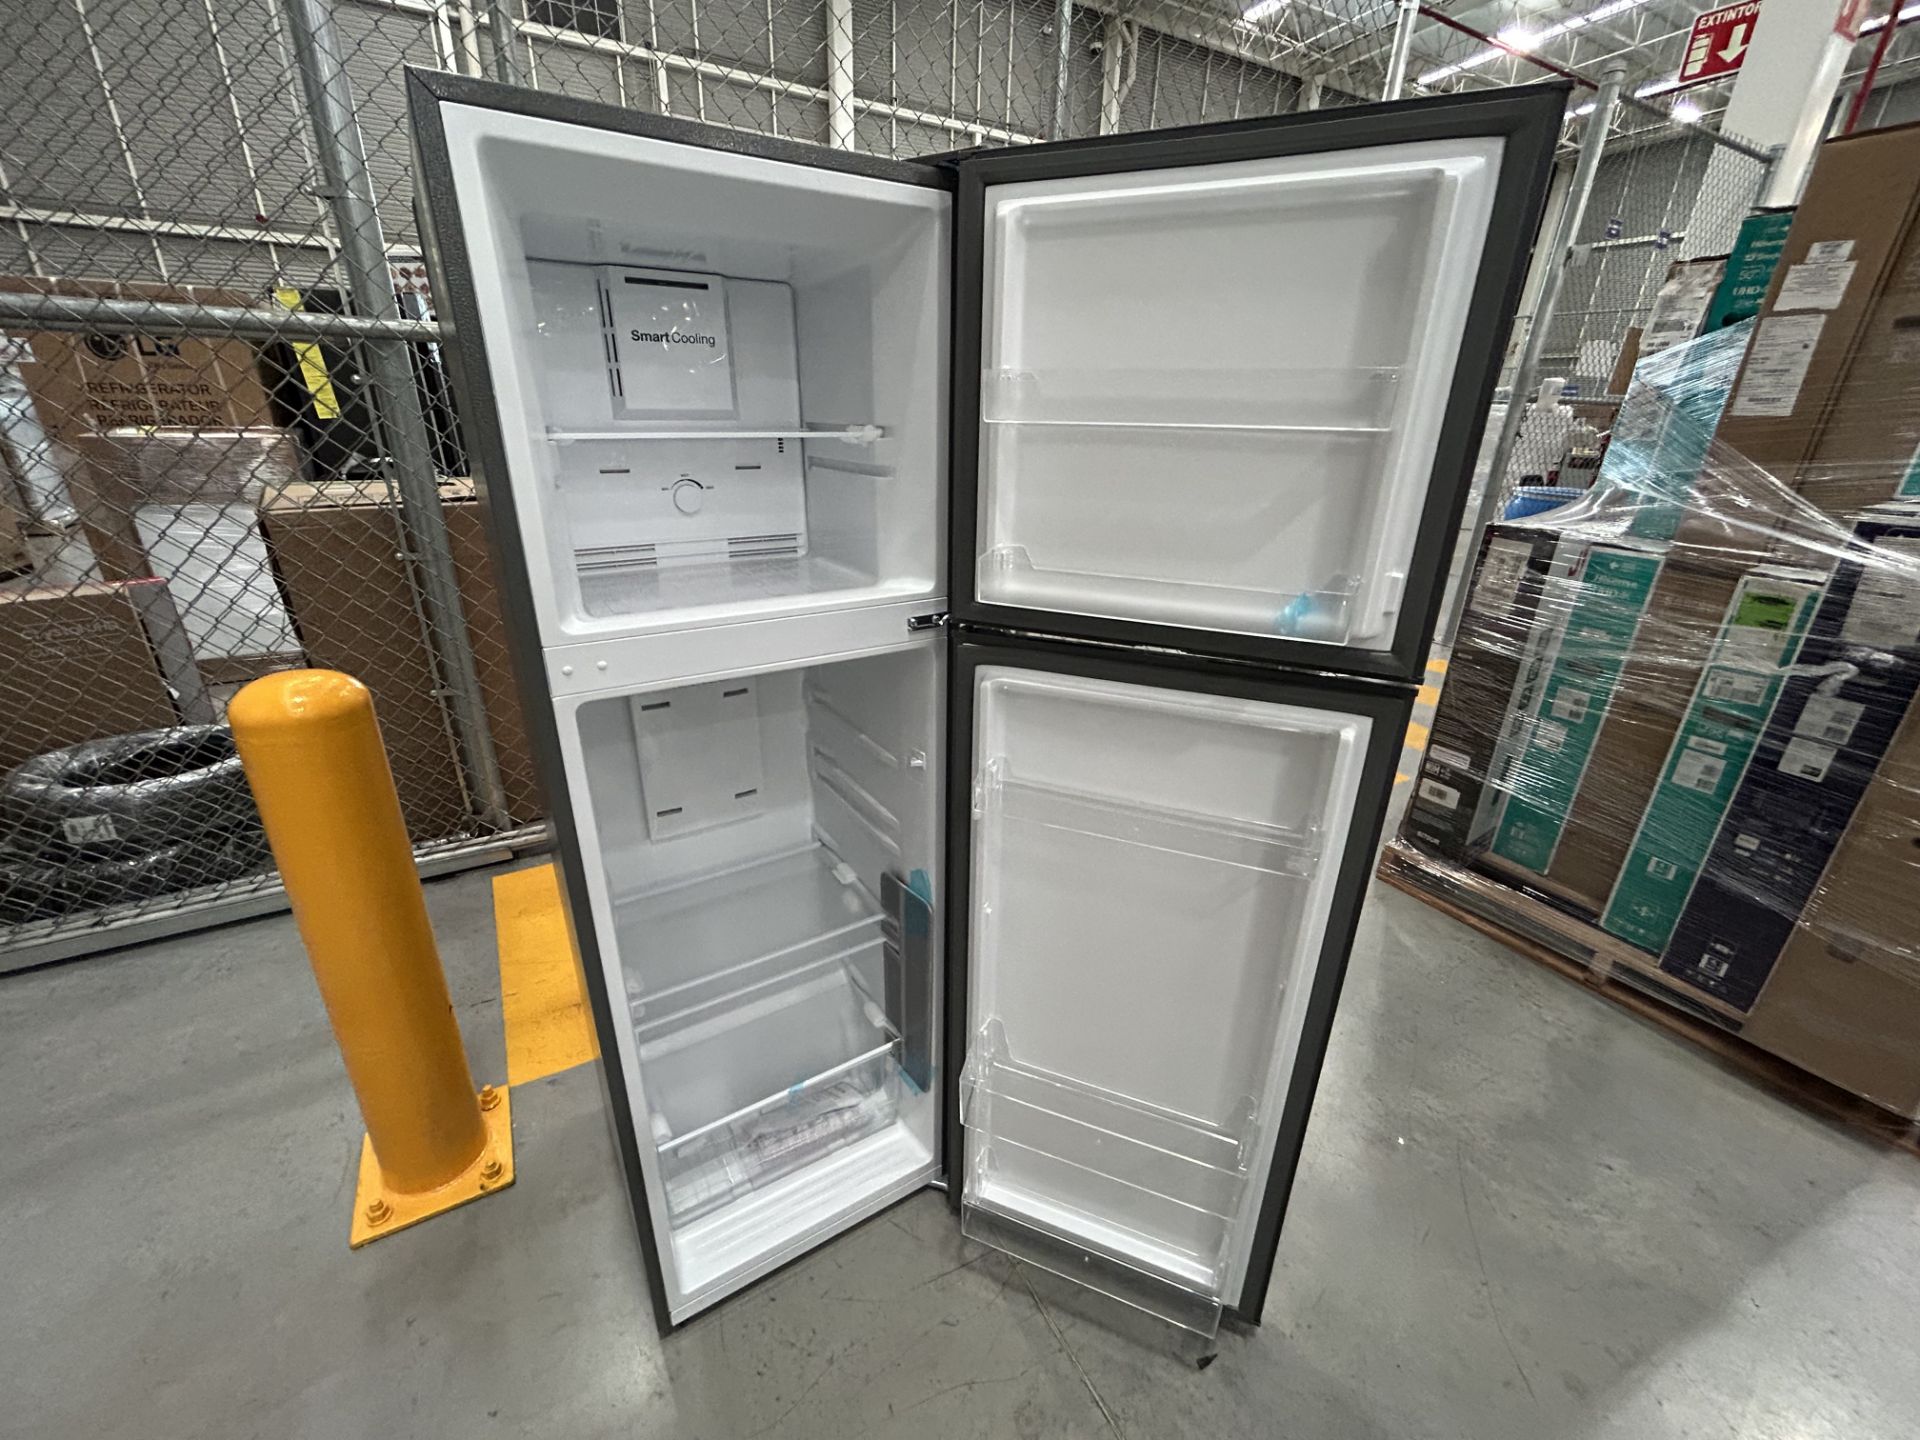 Lote de 2 refrigeradores contiene: 1 refrigerador Marca MABE, Modelo RME360FX, Serie 06730, Color G - Image 10 of 12